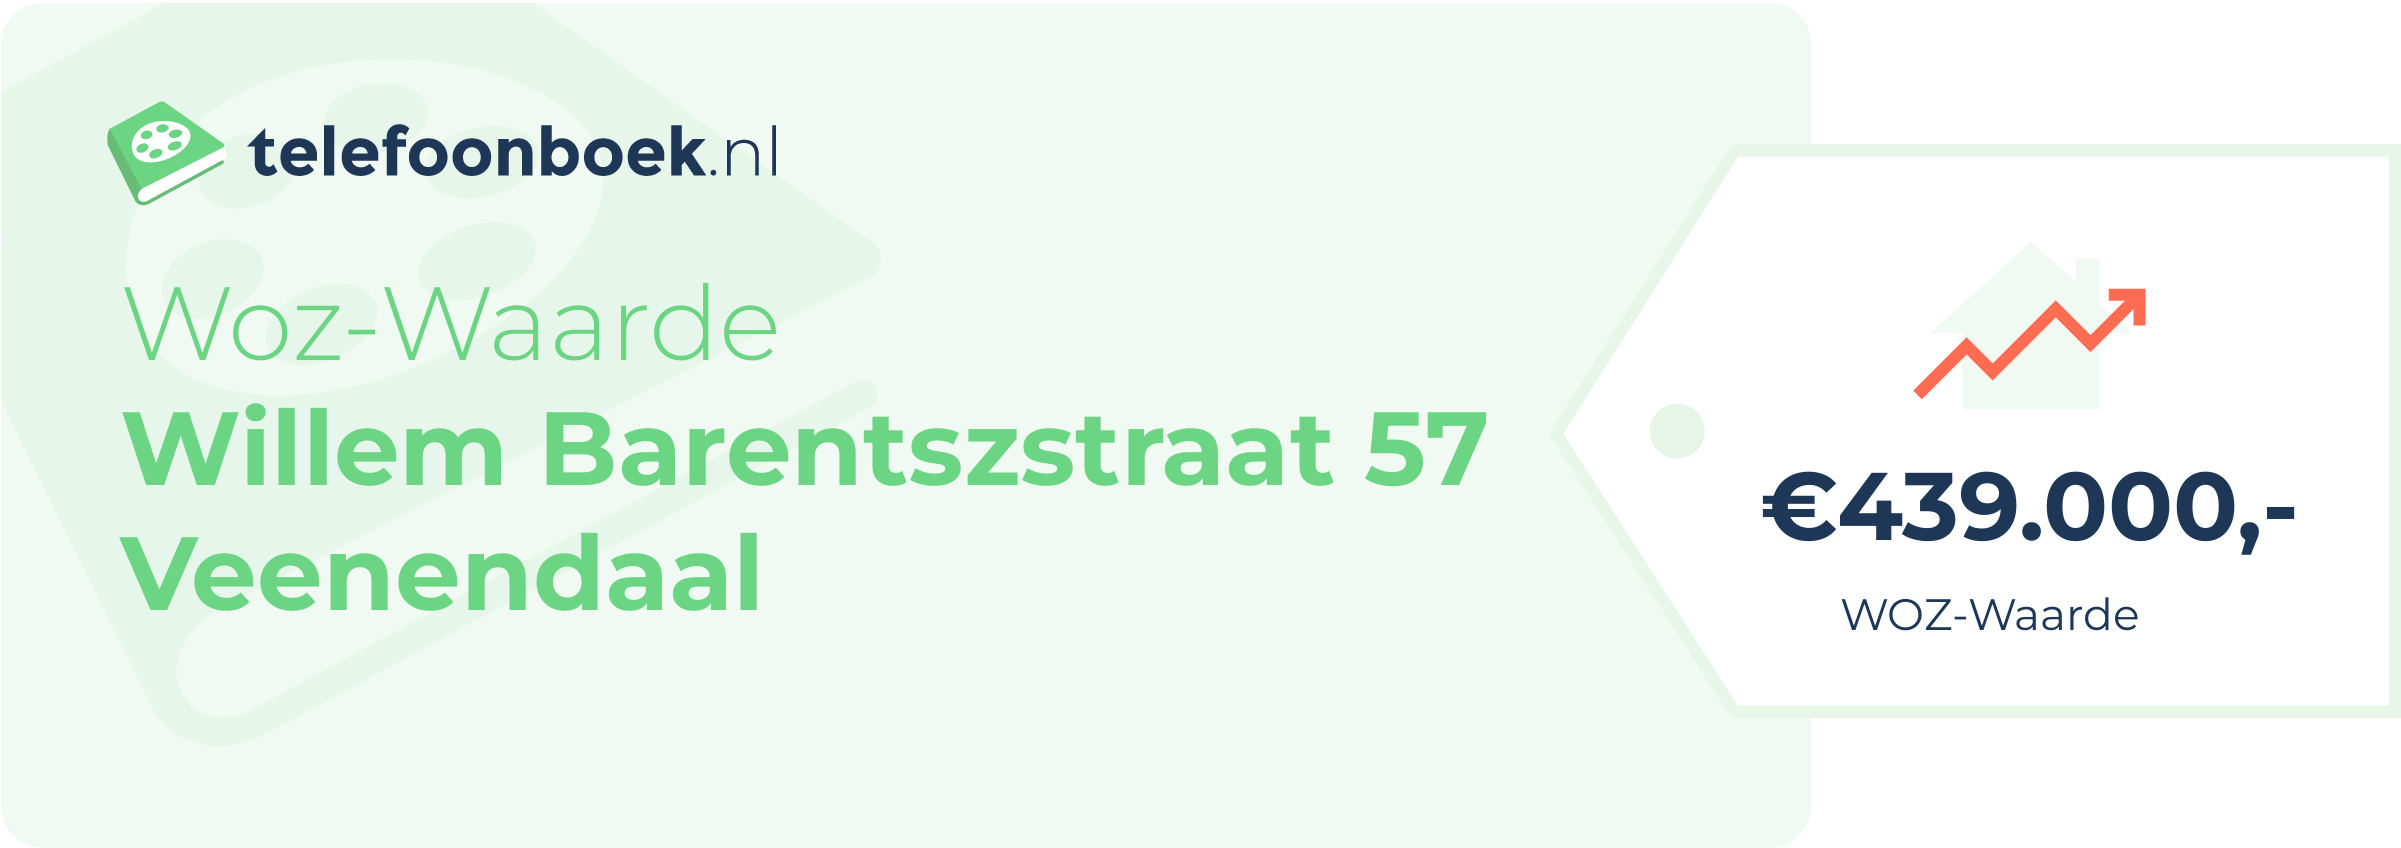 WOZ-waarde Willem Barentszstraat 57 Veenendaal